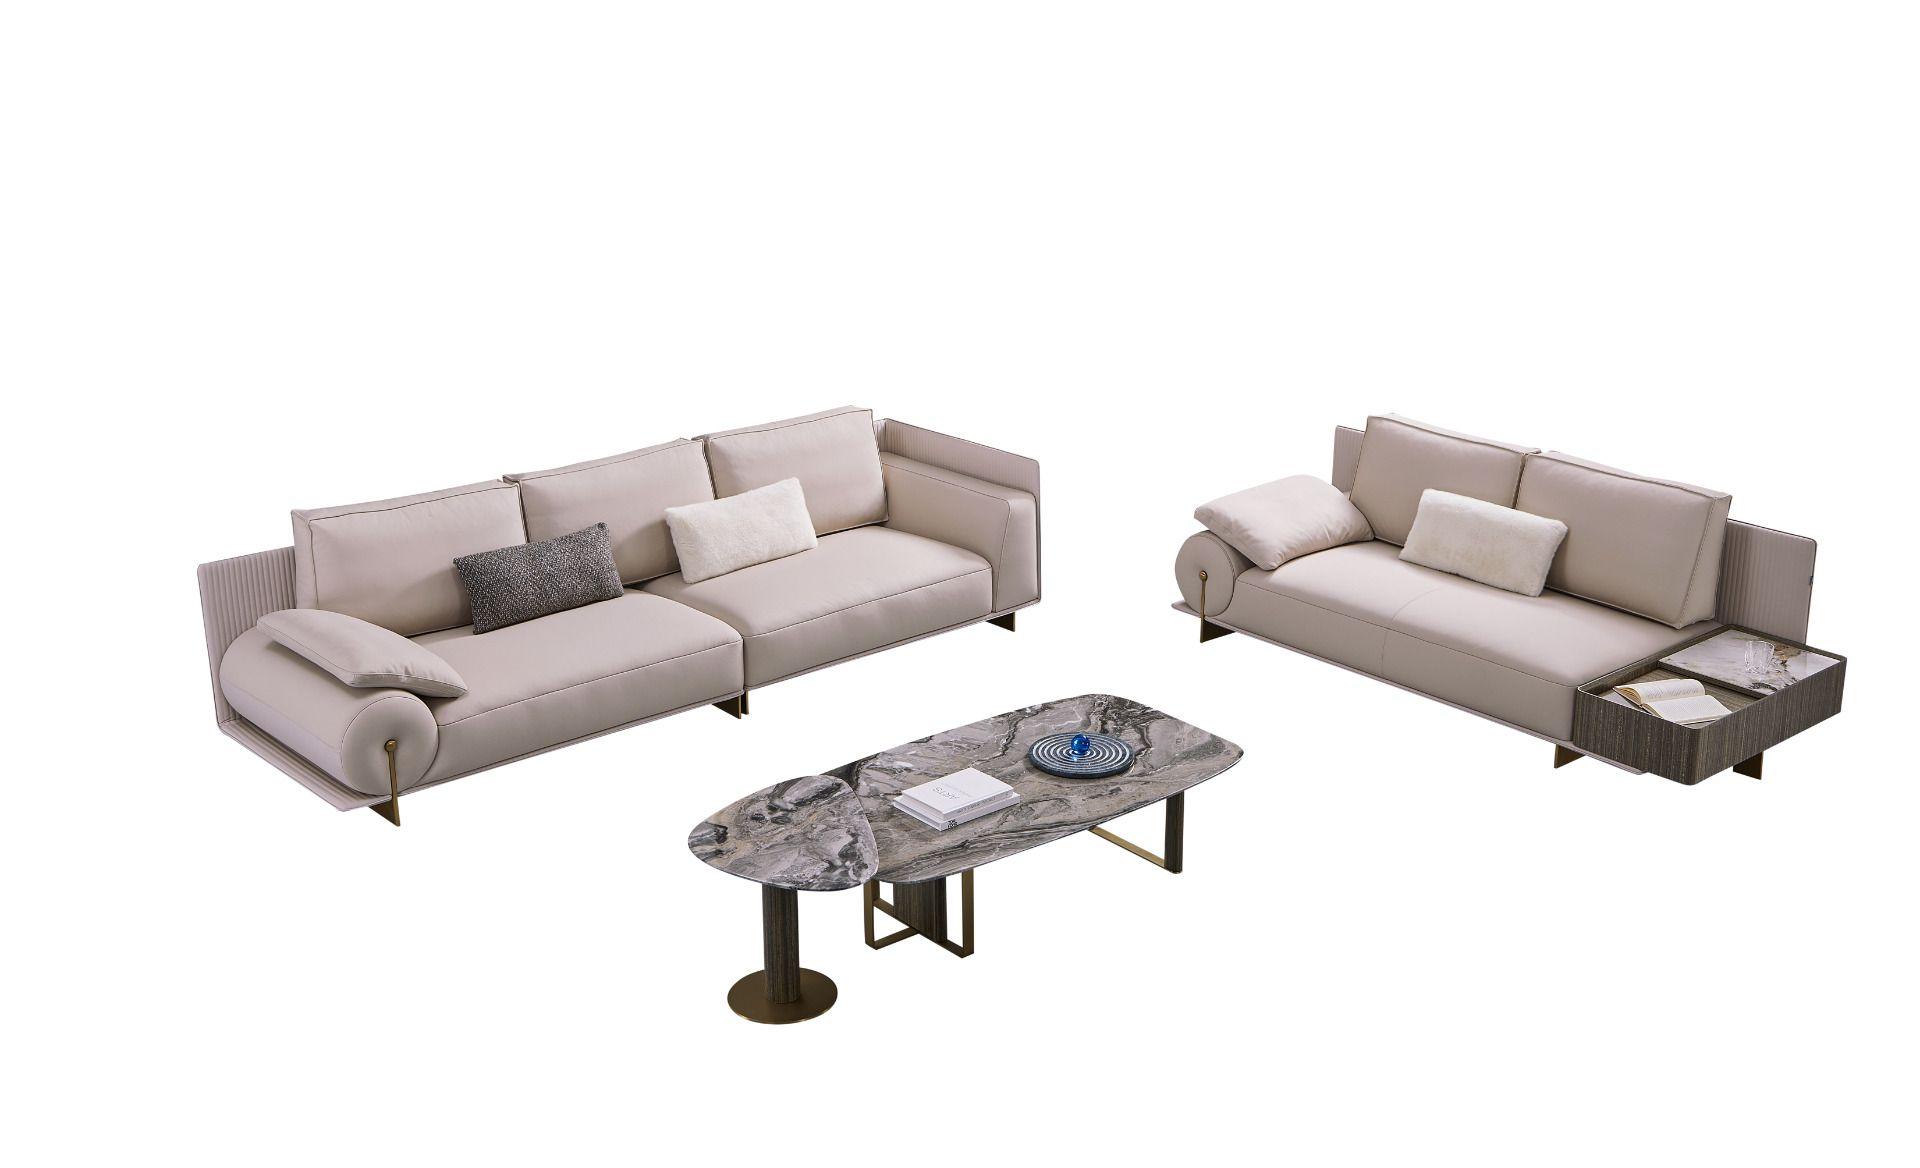 

    
American Eagle Furniture EK-Y1001-LS Loveseat Light Gray EK-Y1001-LS
